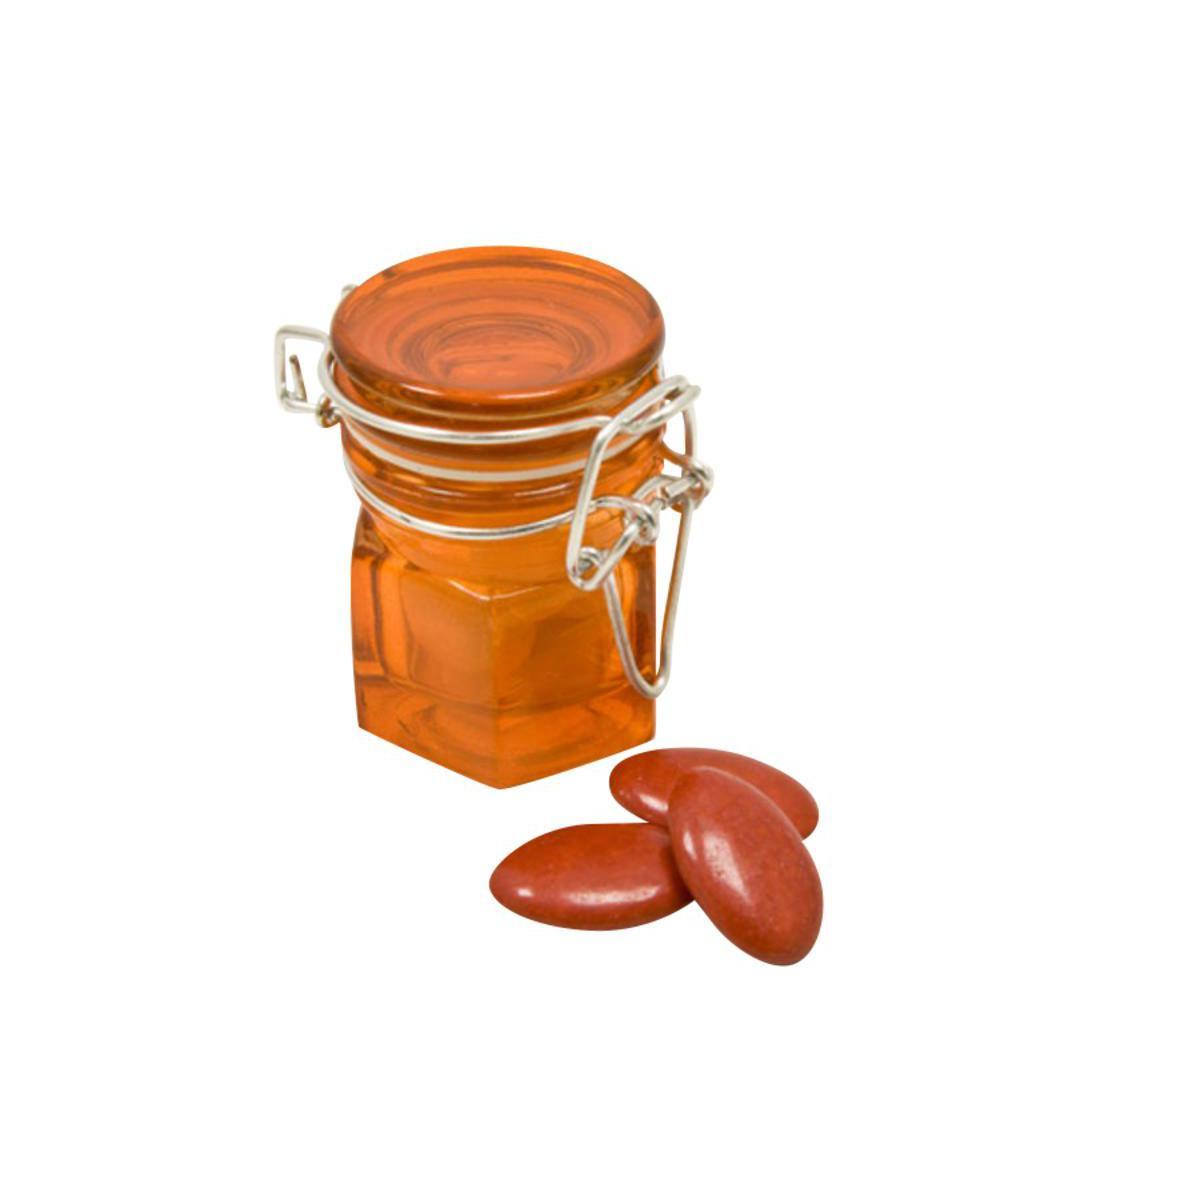 4 pots décoratifs refermables - Verre - 4,2 x 4,2 x 6,4 cm - Verre - Orange